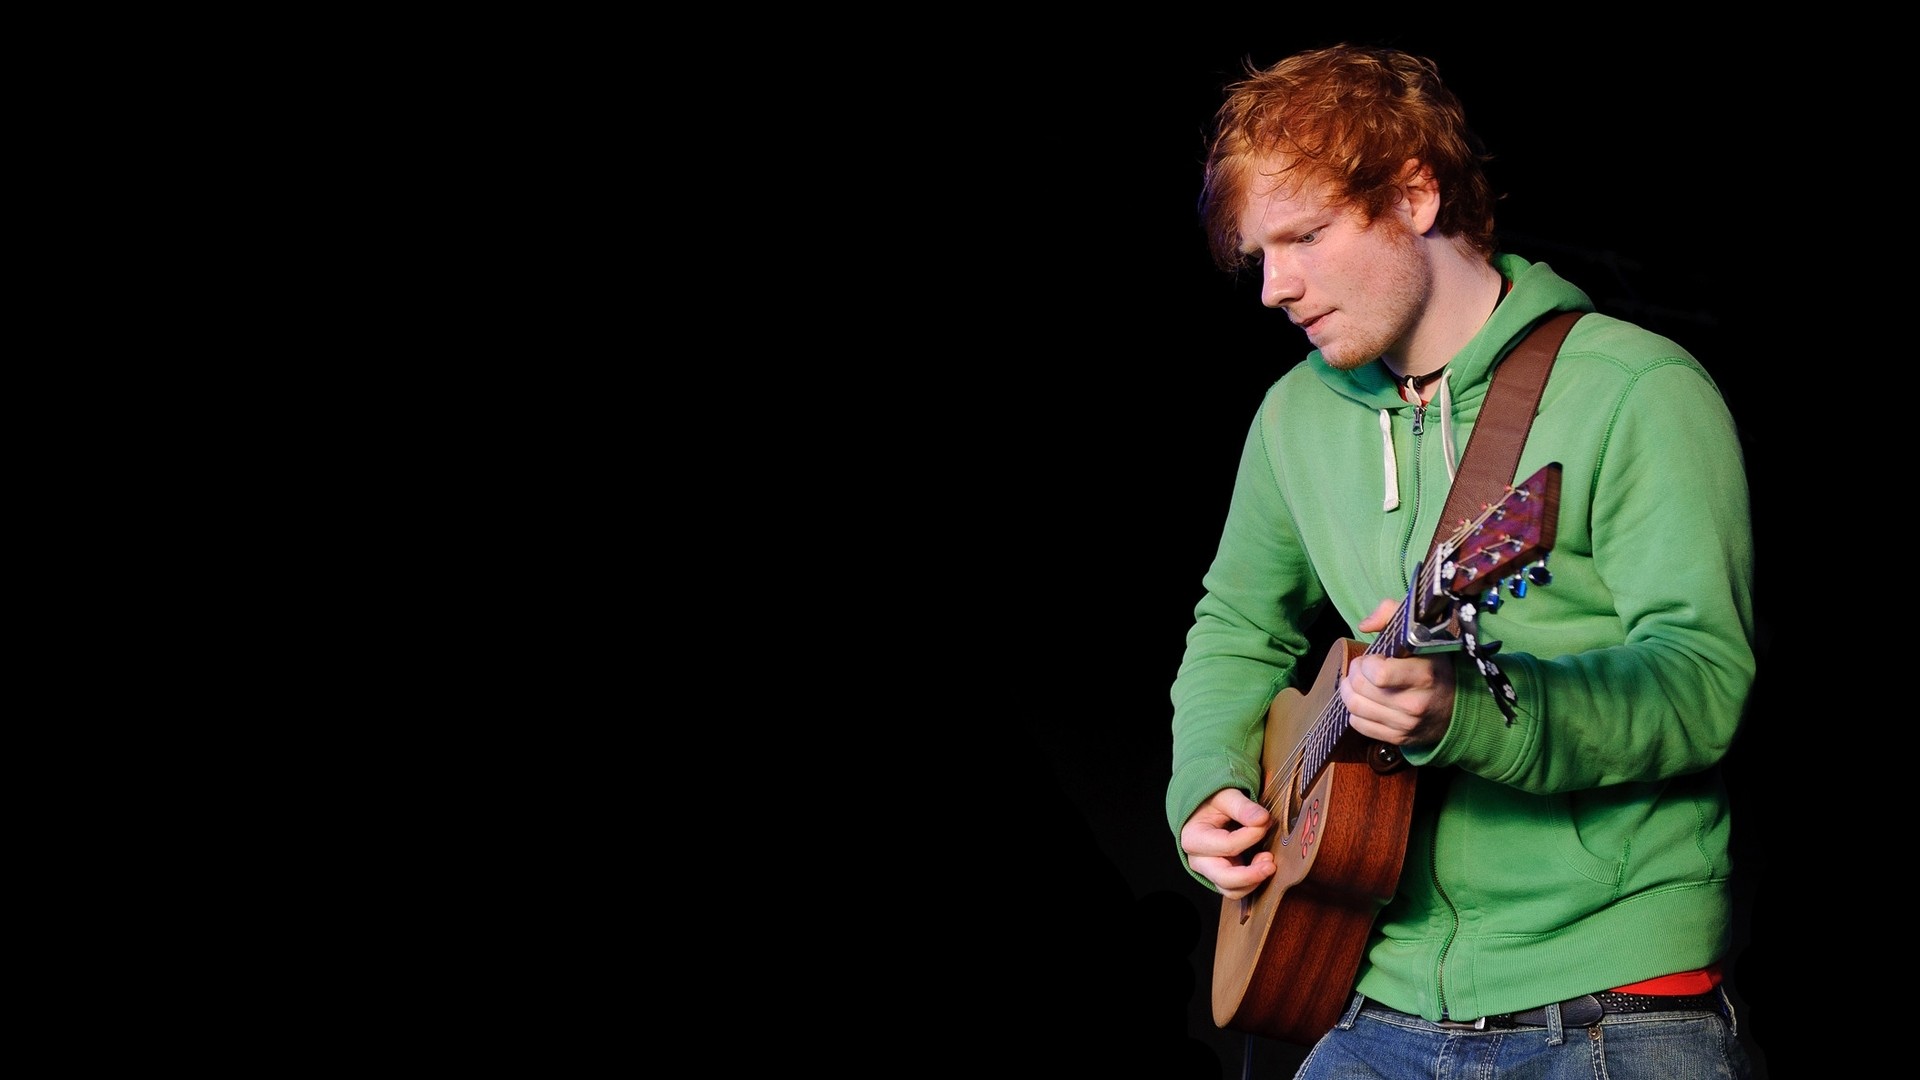 File Name Ed Sheeran HD Wallpapers 2013